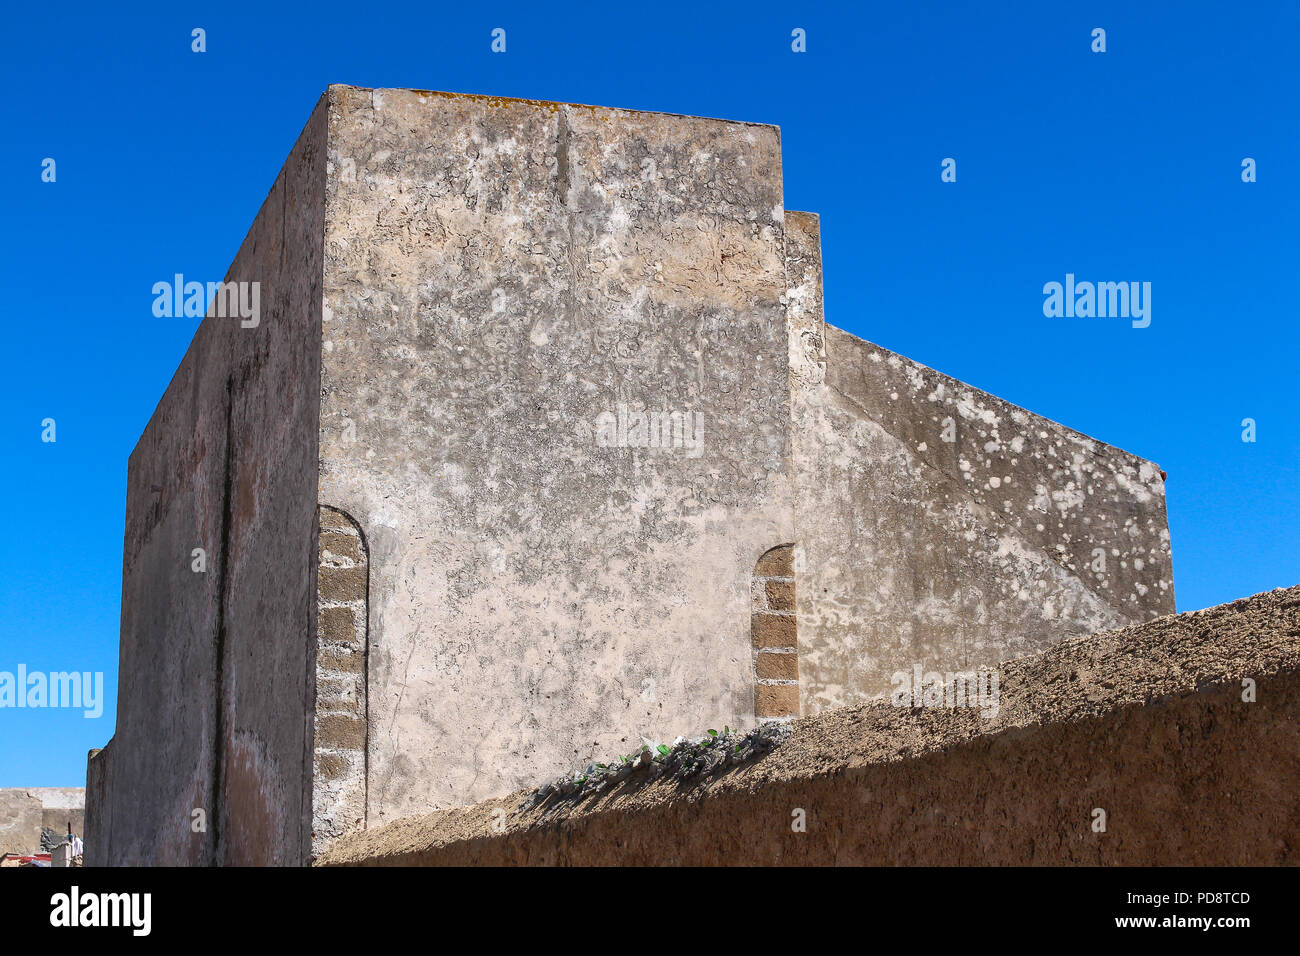 La ligne d'une fortification clôture. Chambre avec murs altérés et sans fenêtres. Ciel bleu. El Jadida, Maroc. Banque D'Images